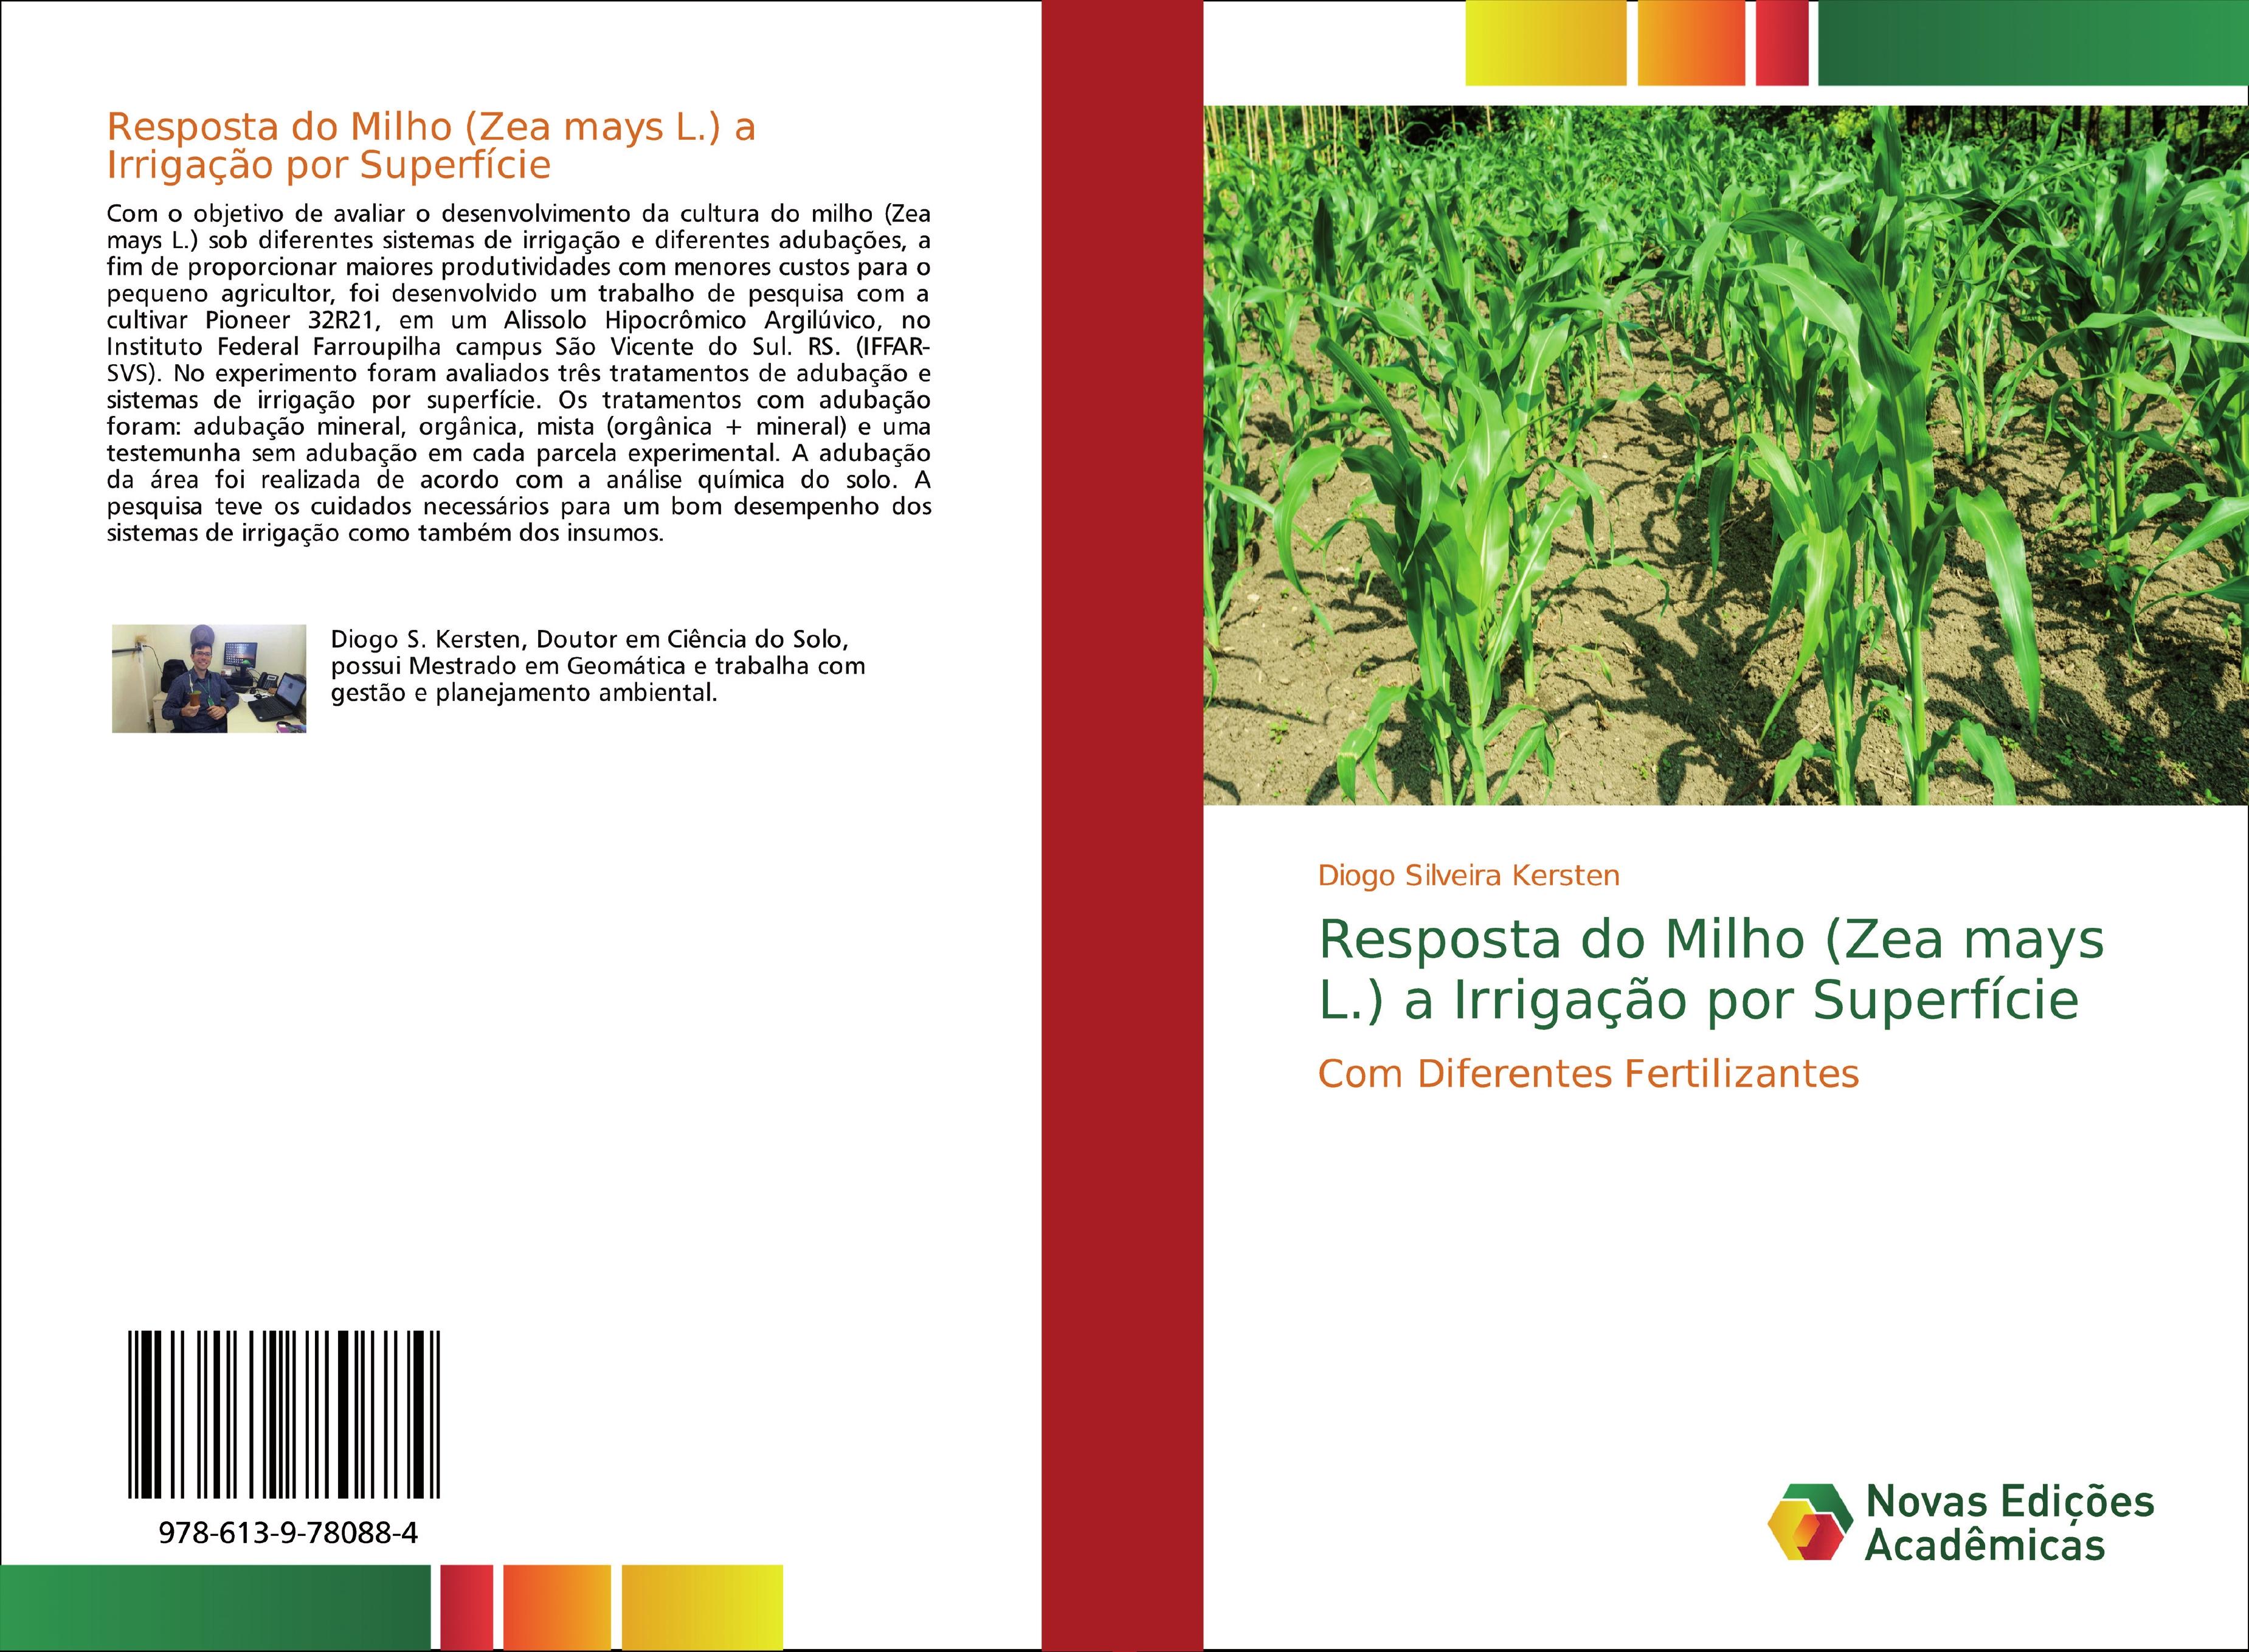 Resposta do Milho (Zea mays L.) a Irrigação por Superfície - Diogo Silveira Kersten